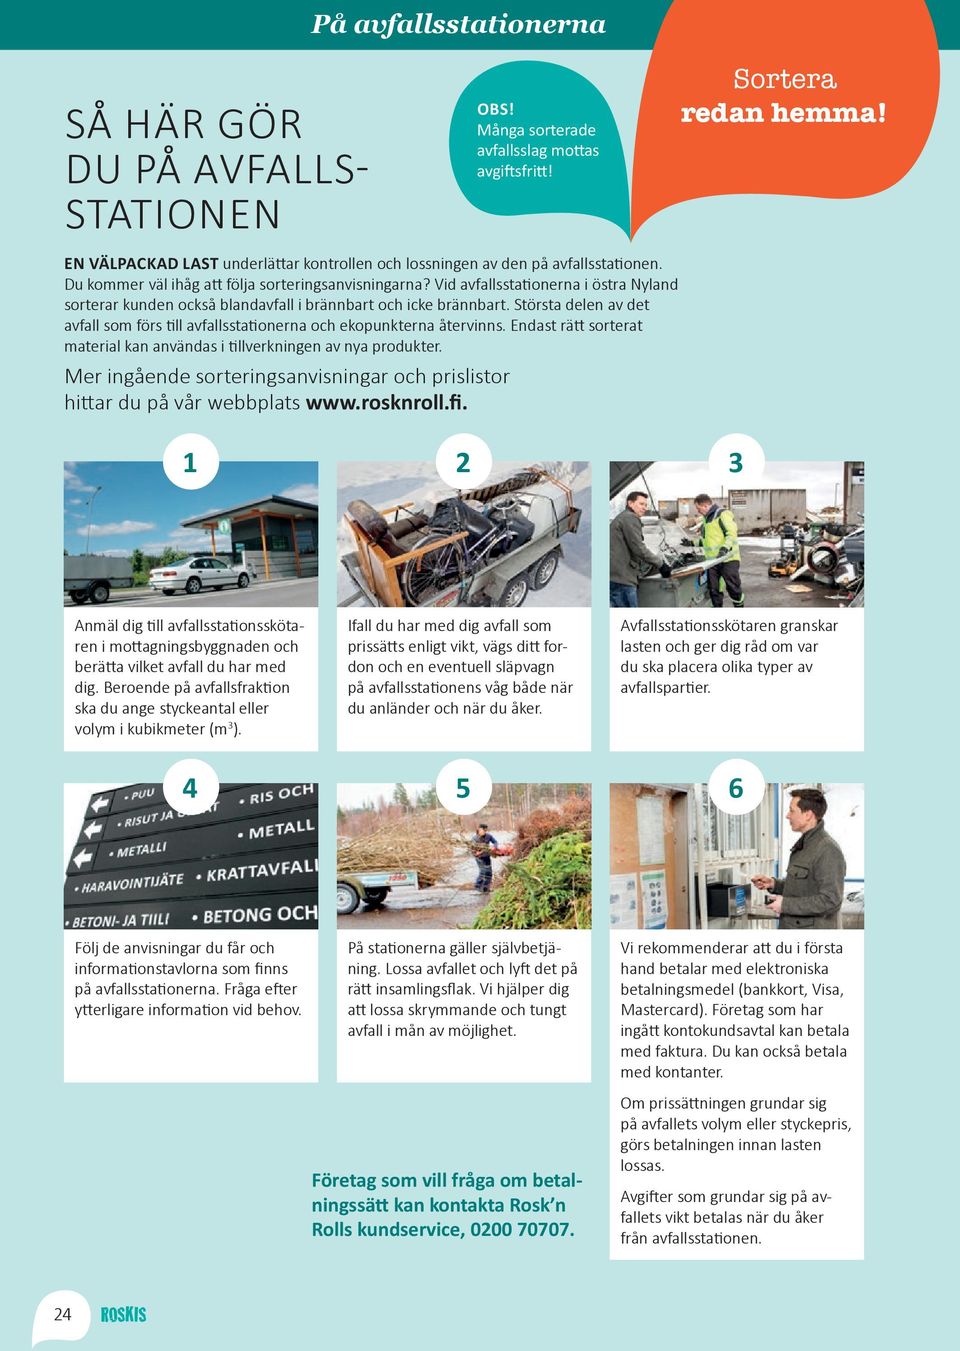 Vid avfallsstationerna i östra Nyland sorterar kunden också blandavfall i brännbart och icke brännbart. Största delen av det avfall som förs till avfallsstationerna och ekopunkterna återvinns.